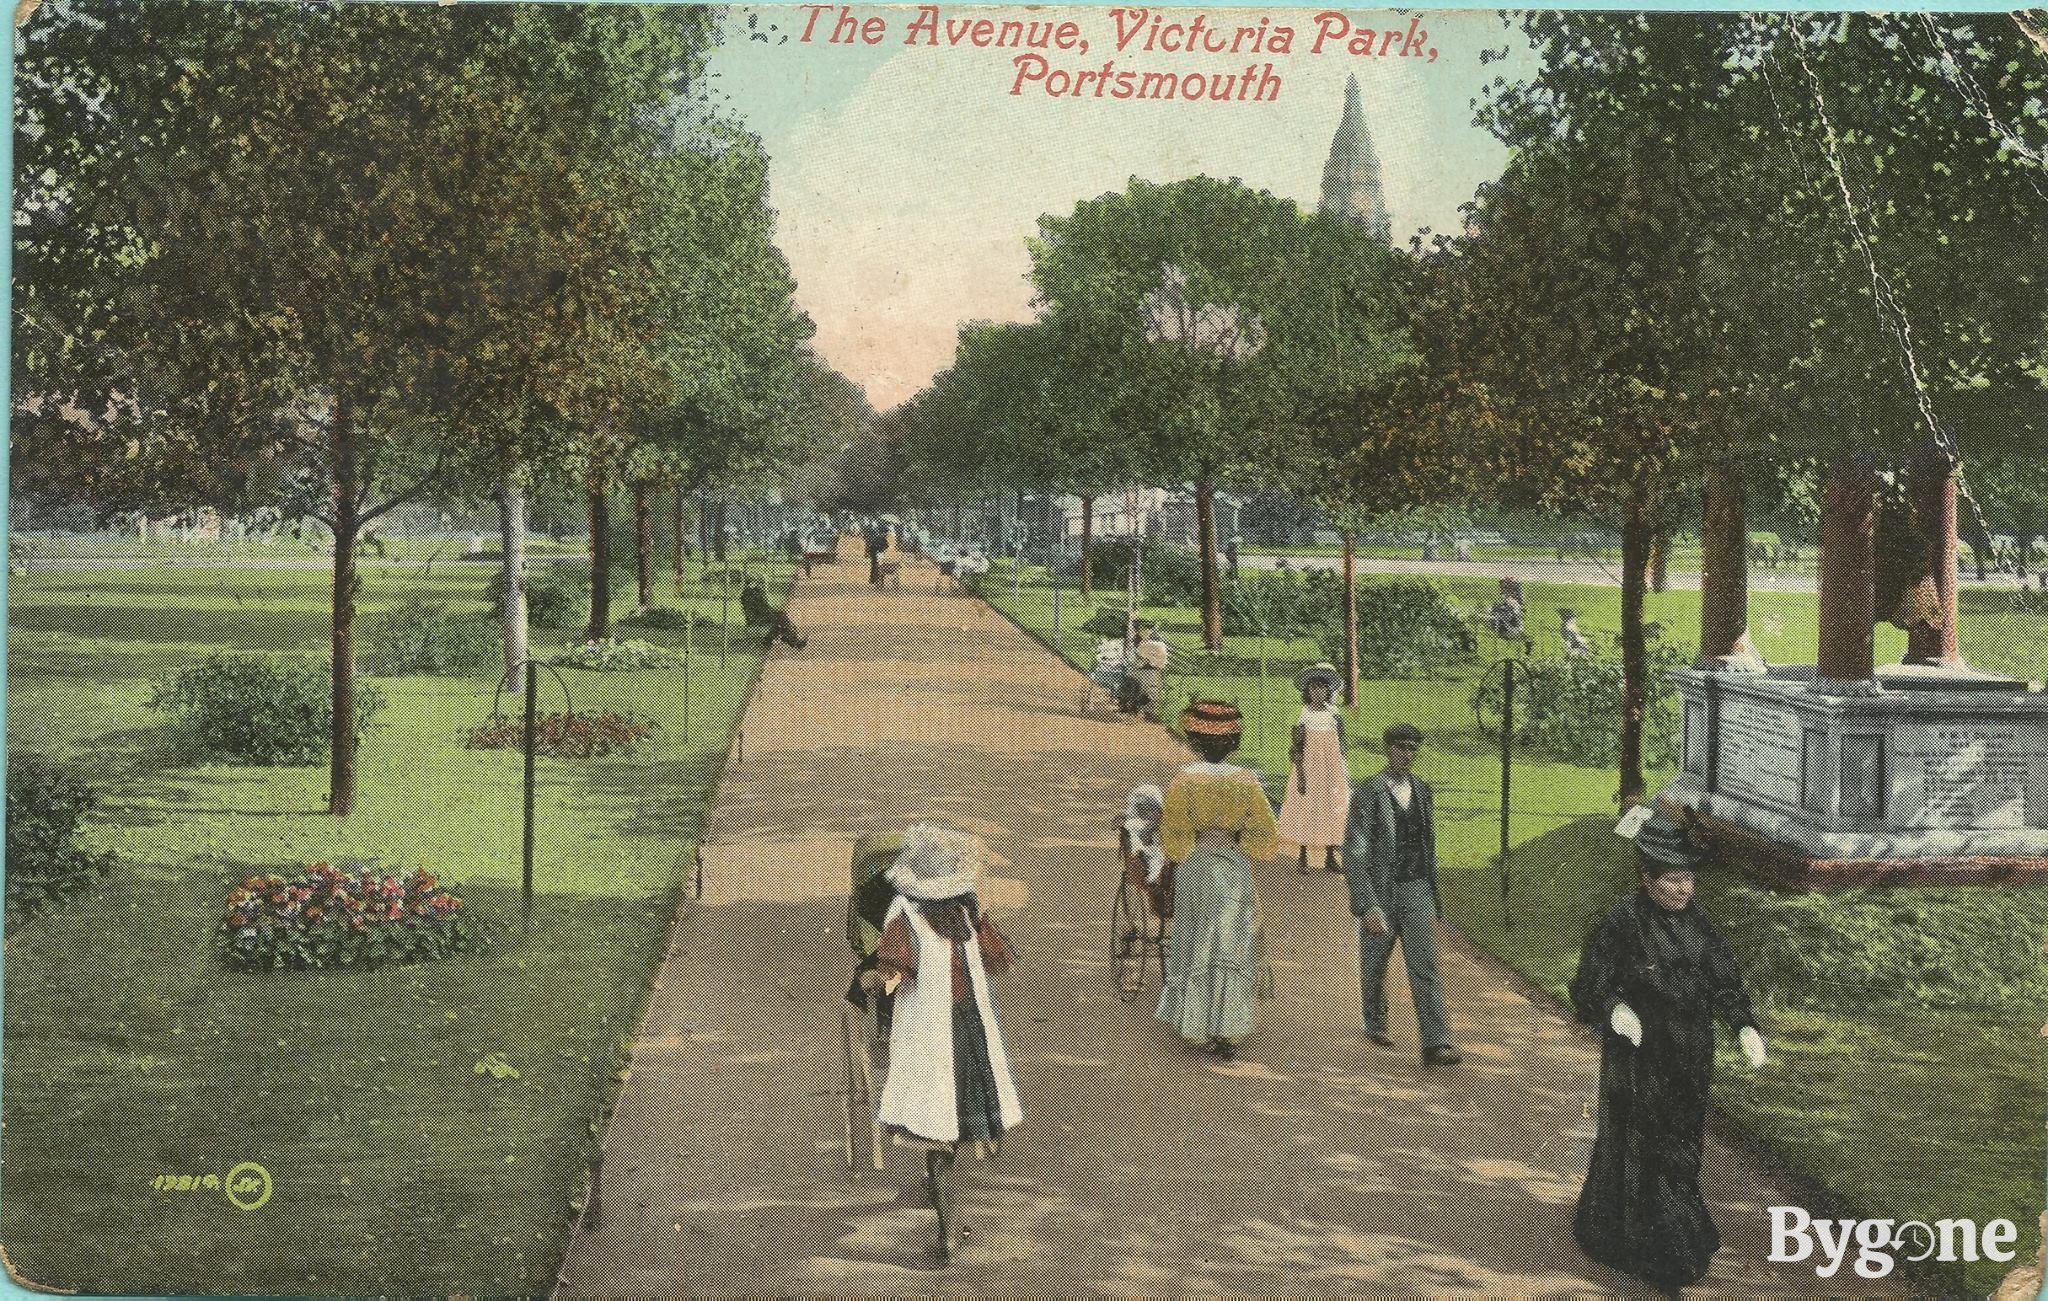 The Avenue, Victoria Park, 1908